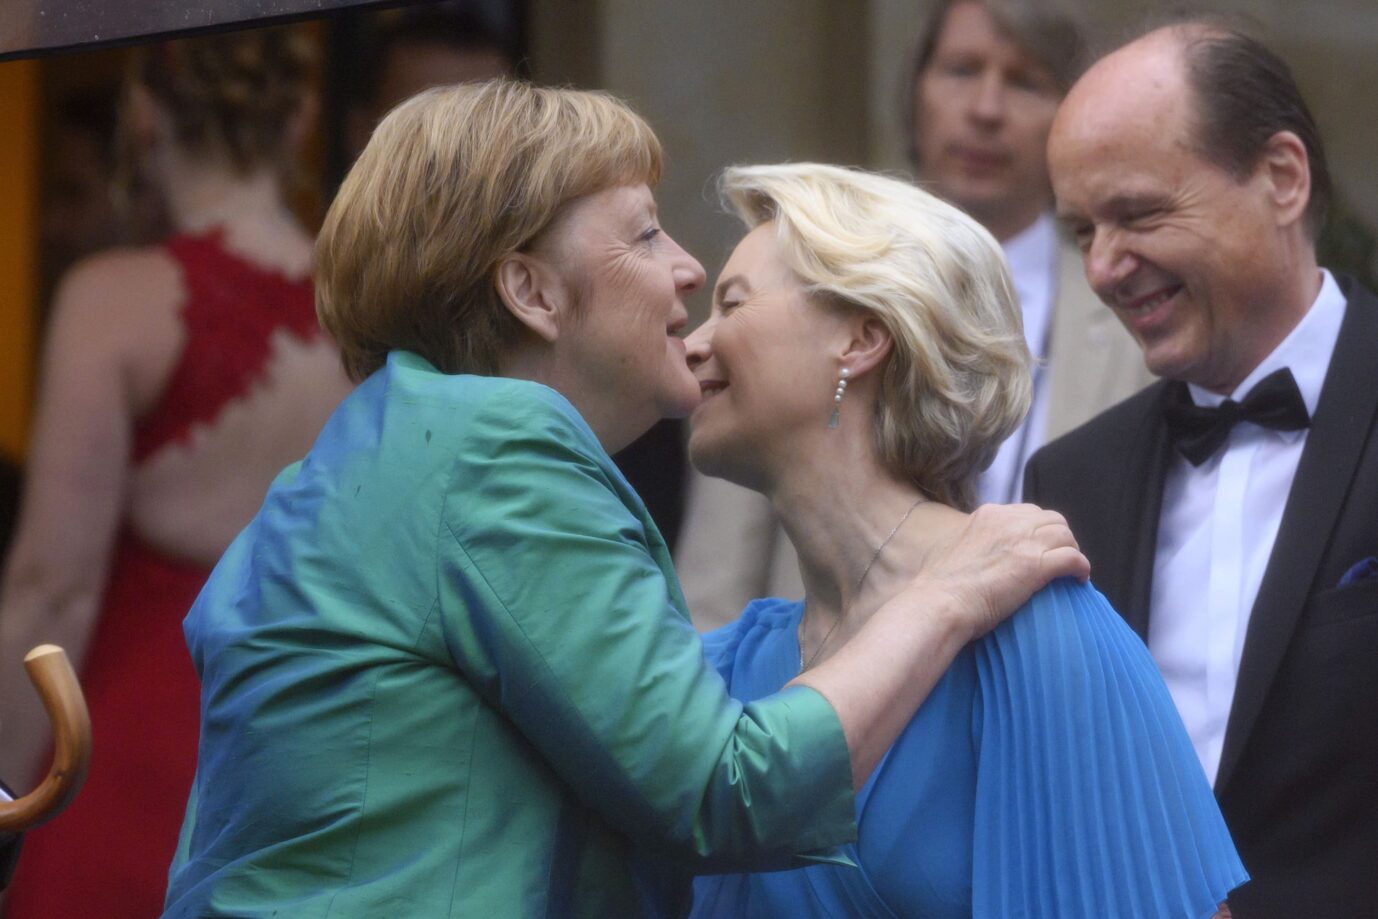 Altkanzlerin Angela Merkel (CDU) läßt sich auf Steuerzahlerkosten teuer frisieren, EU-Kommissionspräsidentin Ursula von der Leyen (CDU) liebt kostspielige Fotografen. Foto: picture alliance / Panama Pictures | Dwi Anoraganingrum